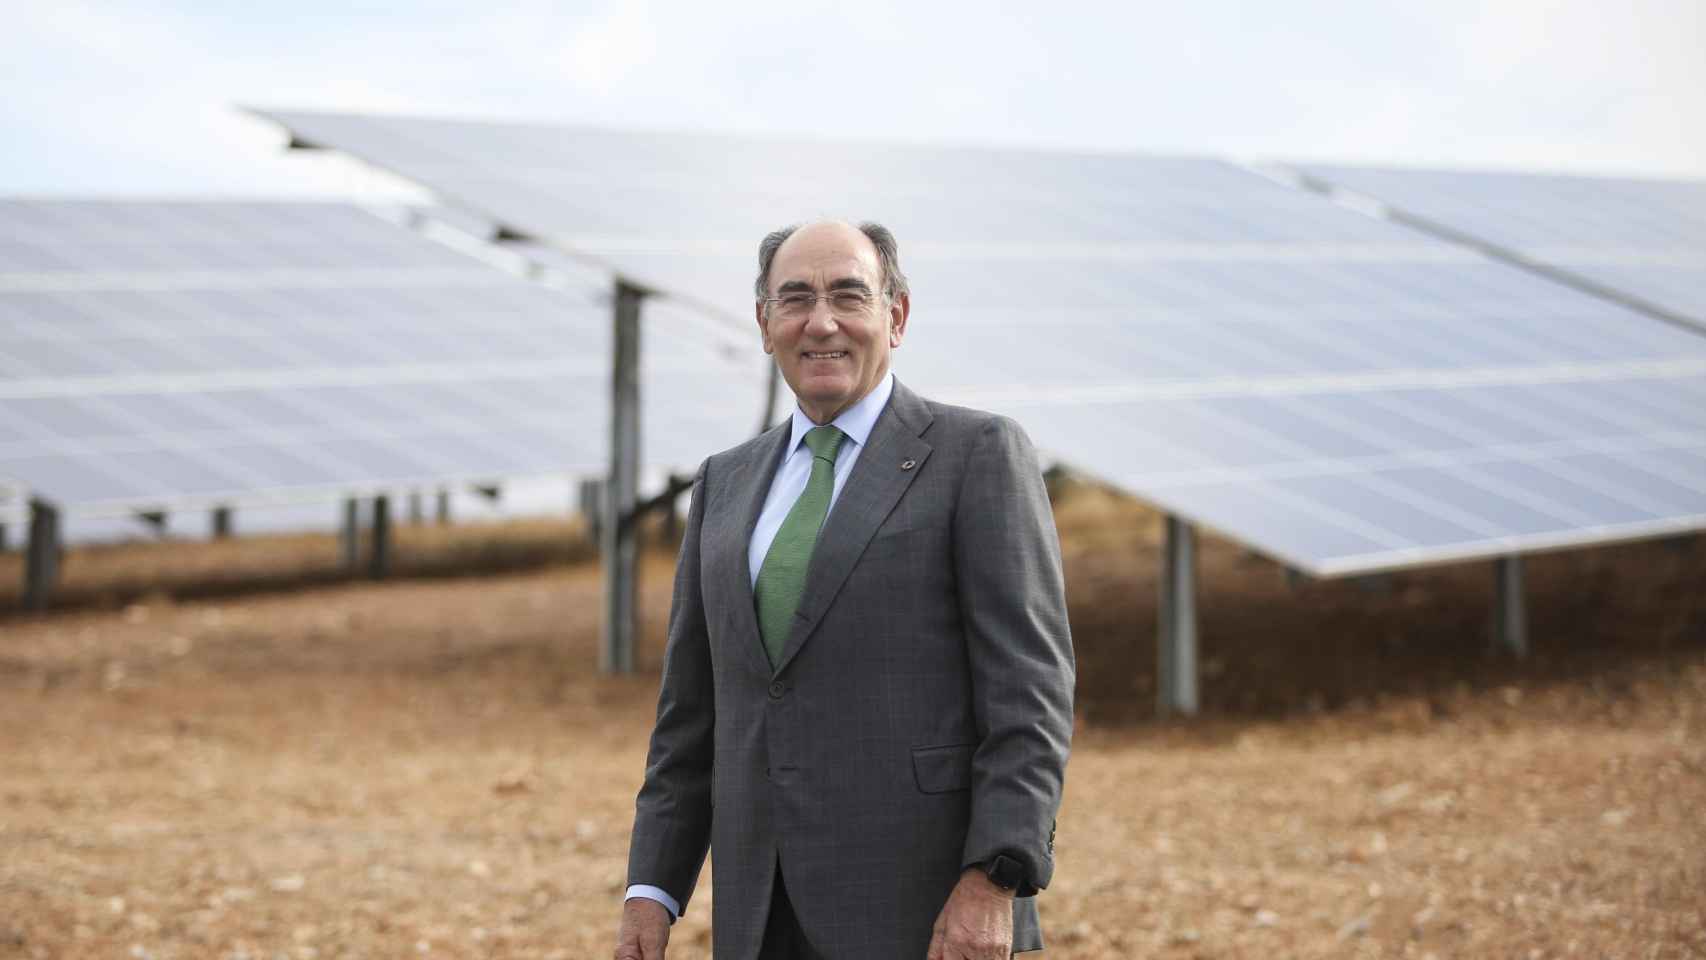 El presidente de Iberdrola, Ignacio Galán, en imagen de arhivo / EP